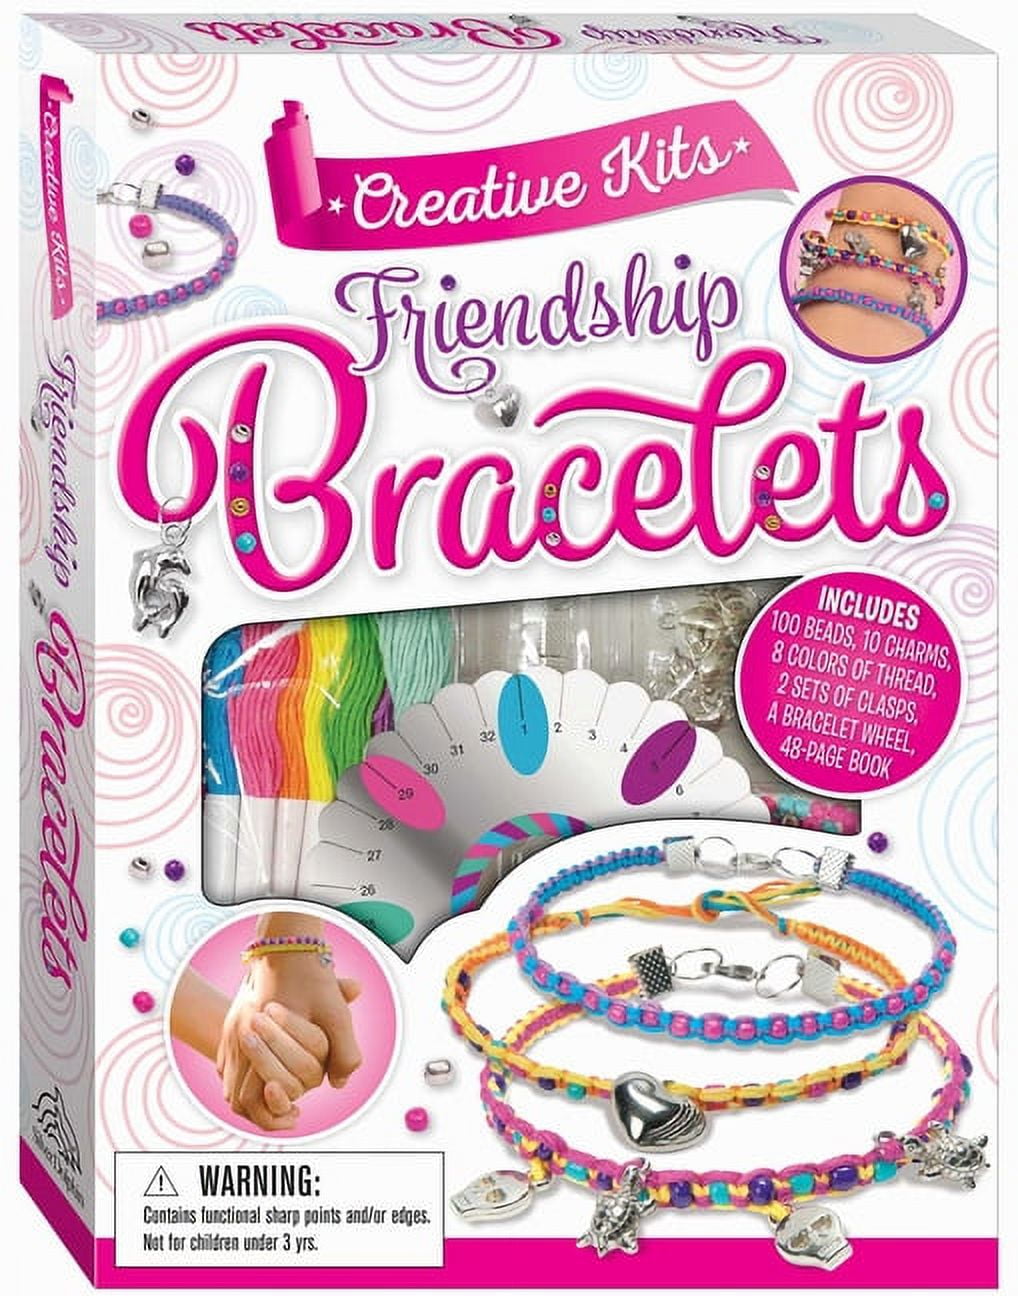 DIY Your Own Friendship Bracelet At Pink&Z's Fun Weekend Workshop - KL  Foodie